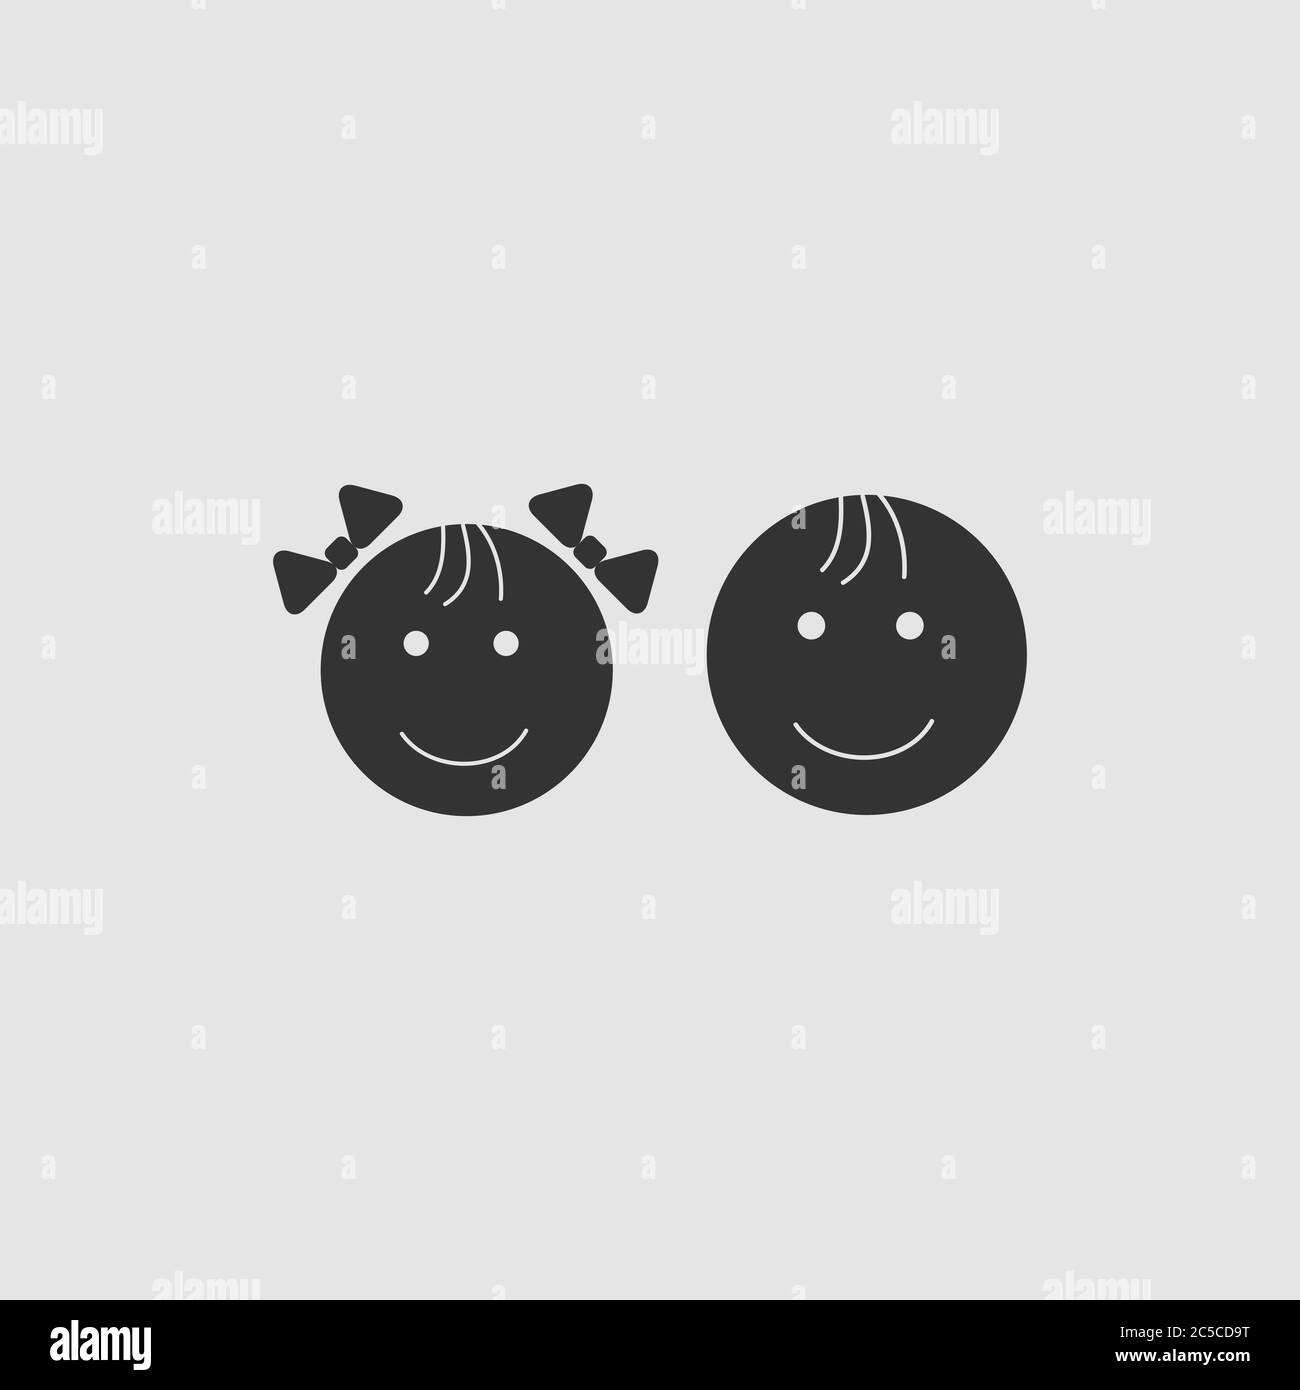 Kind Gesichter Symbol flach. Schwarzes Piktogramm auf grauem Hintergrund. Vektorgrafik Symbol Stock Vektor